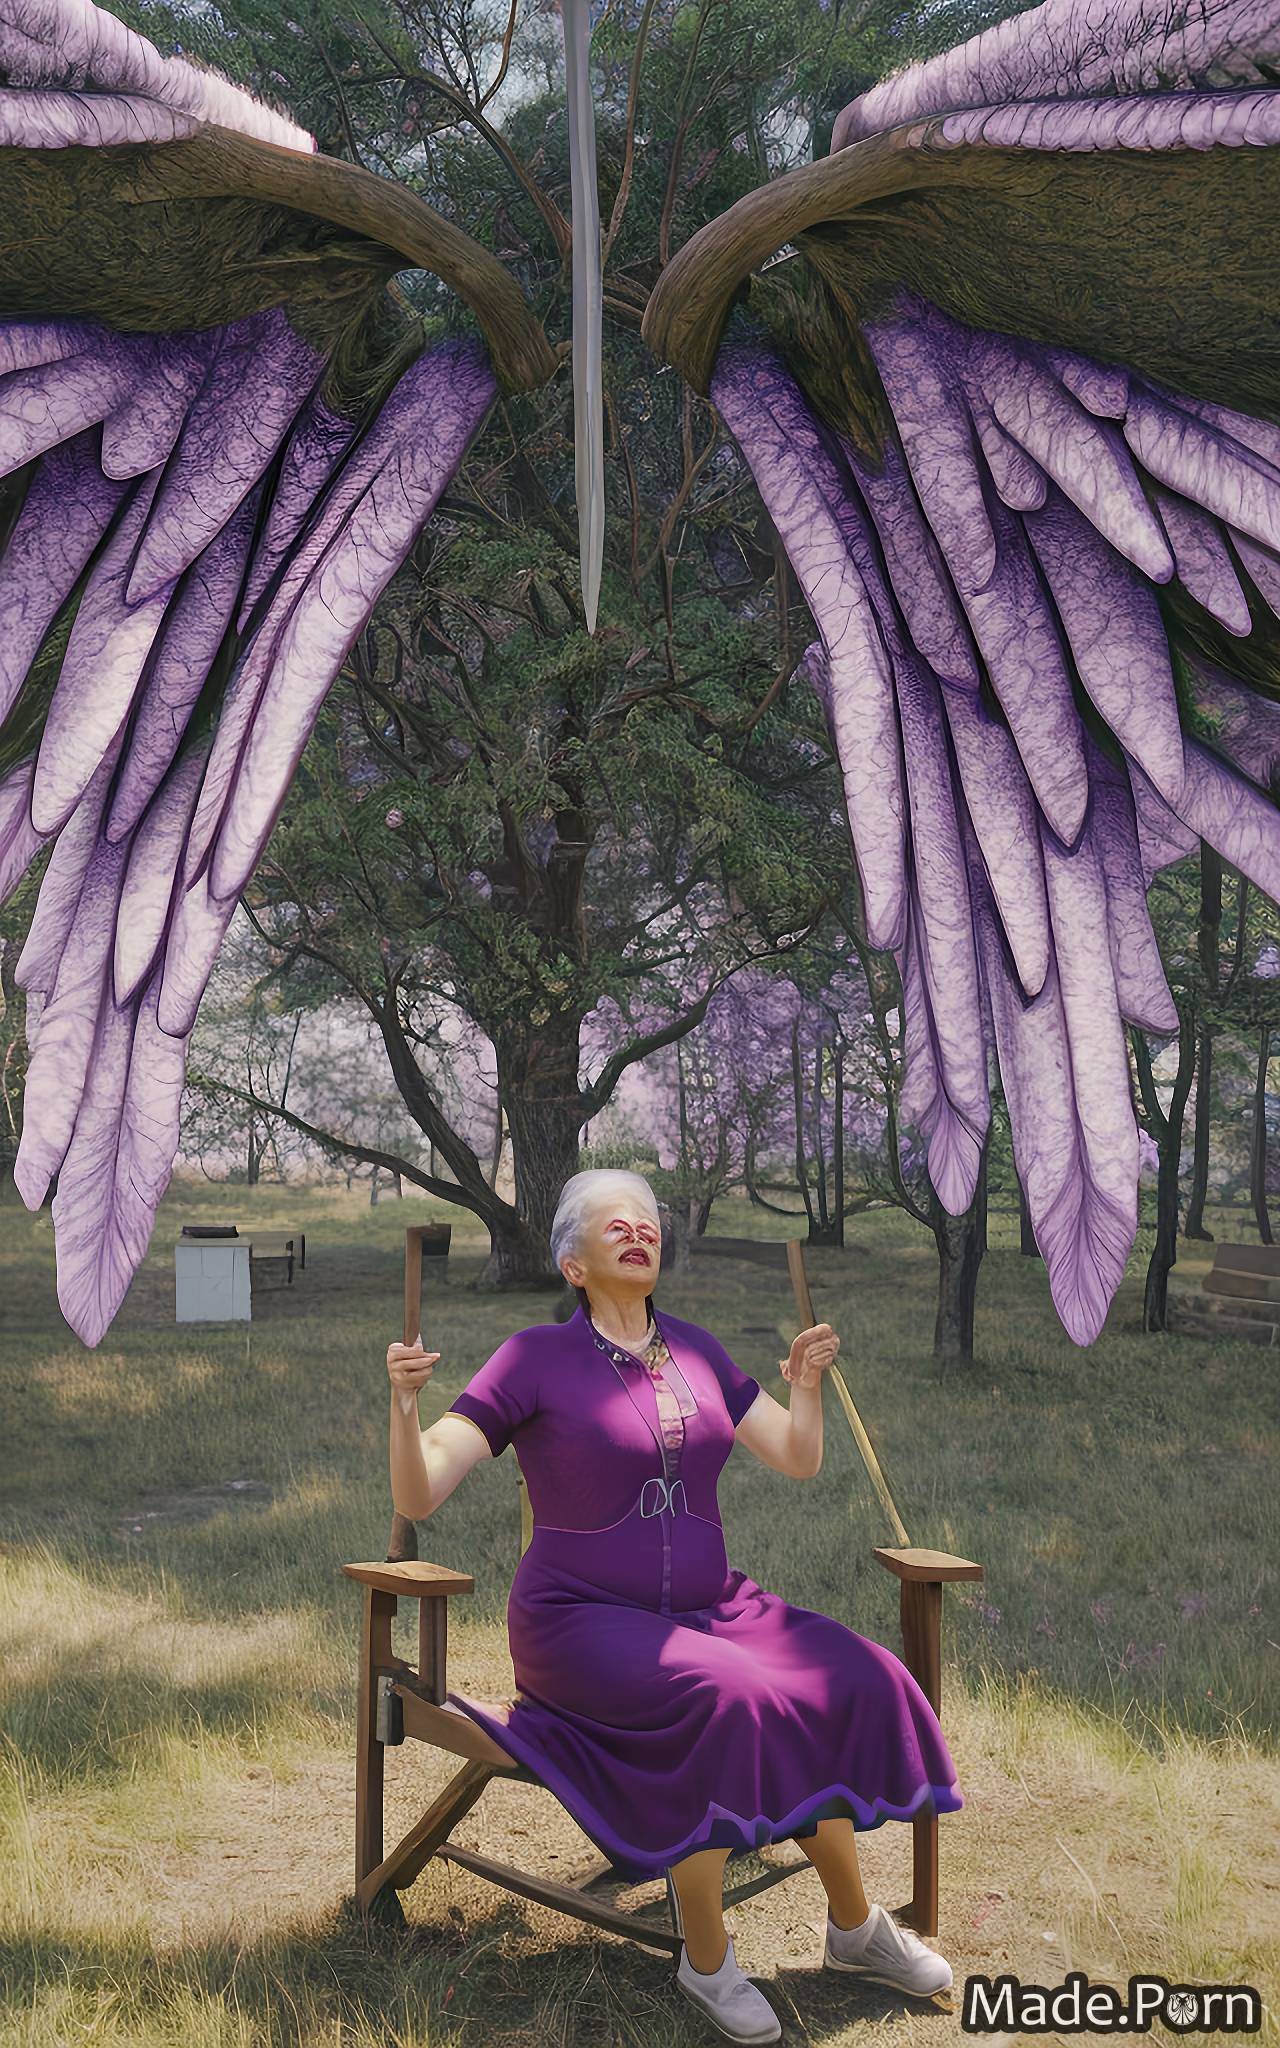 cheerleader dark fantasy cave purple hair purple bird wings 80